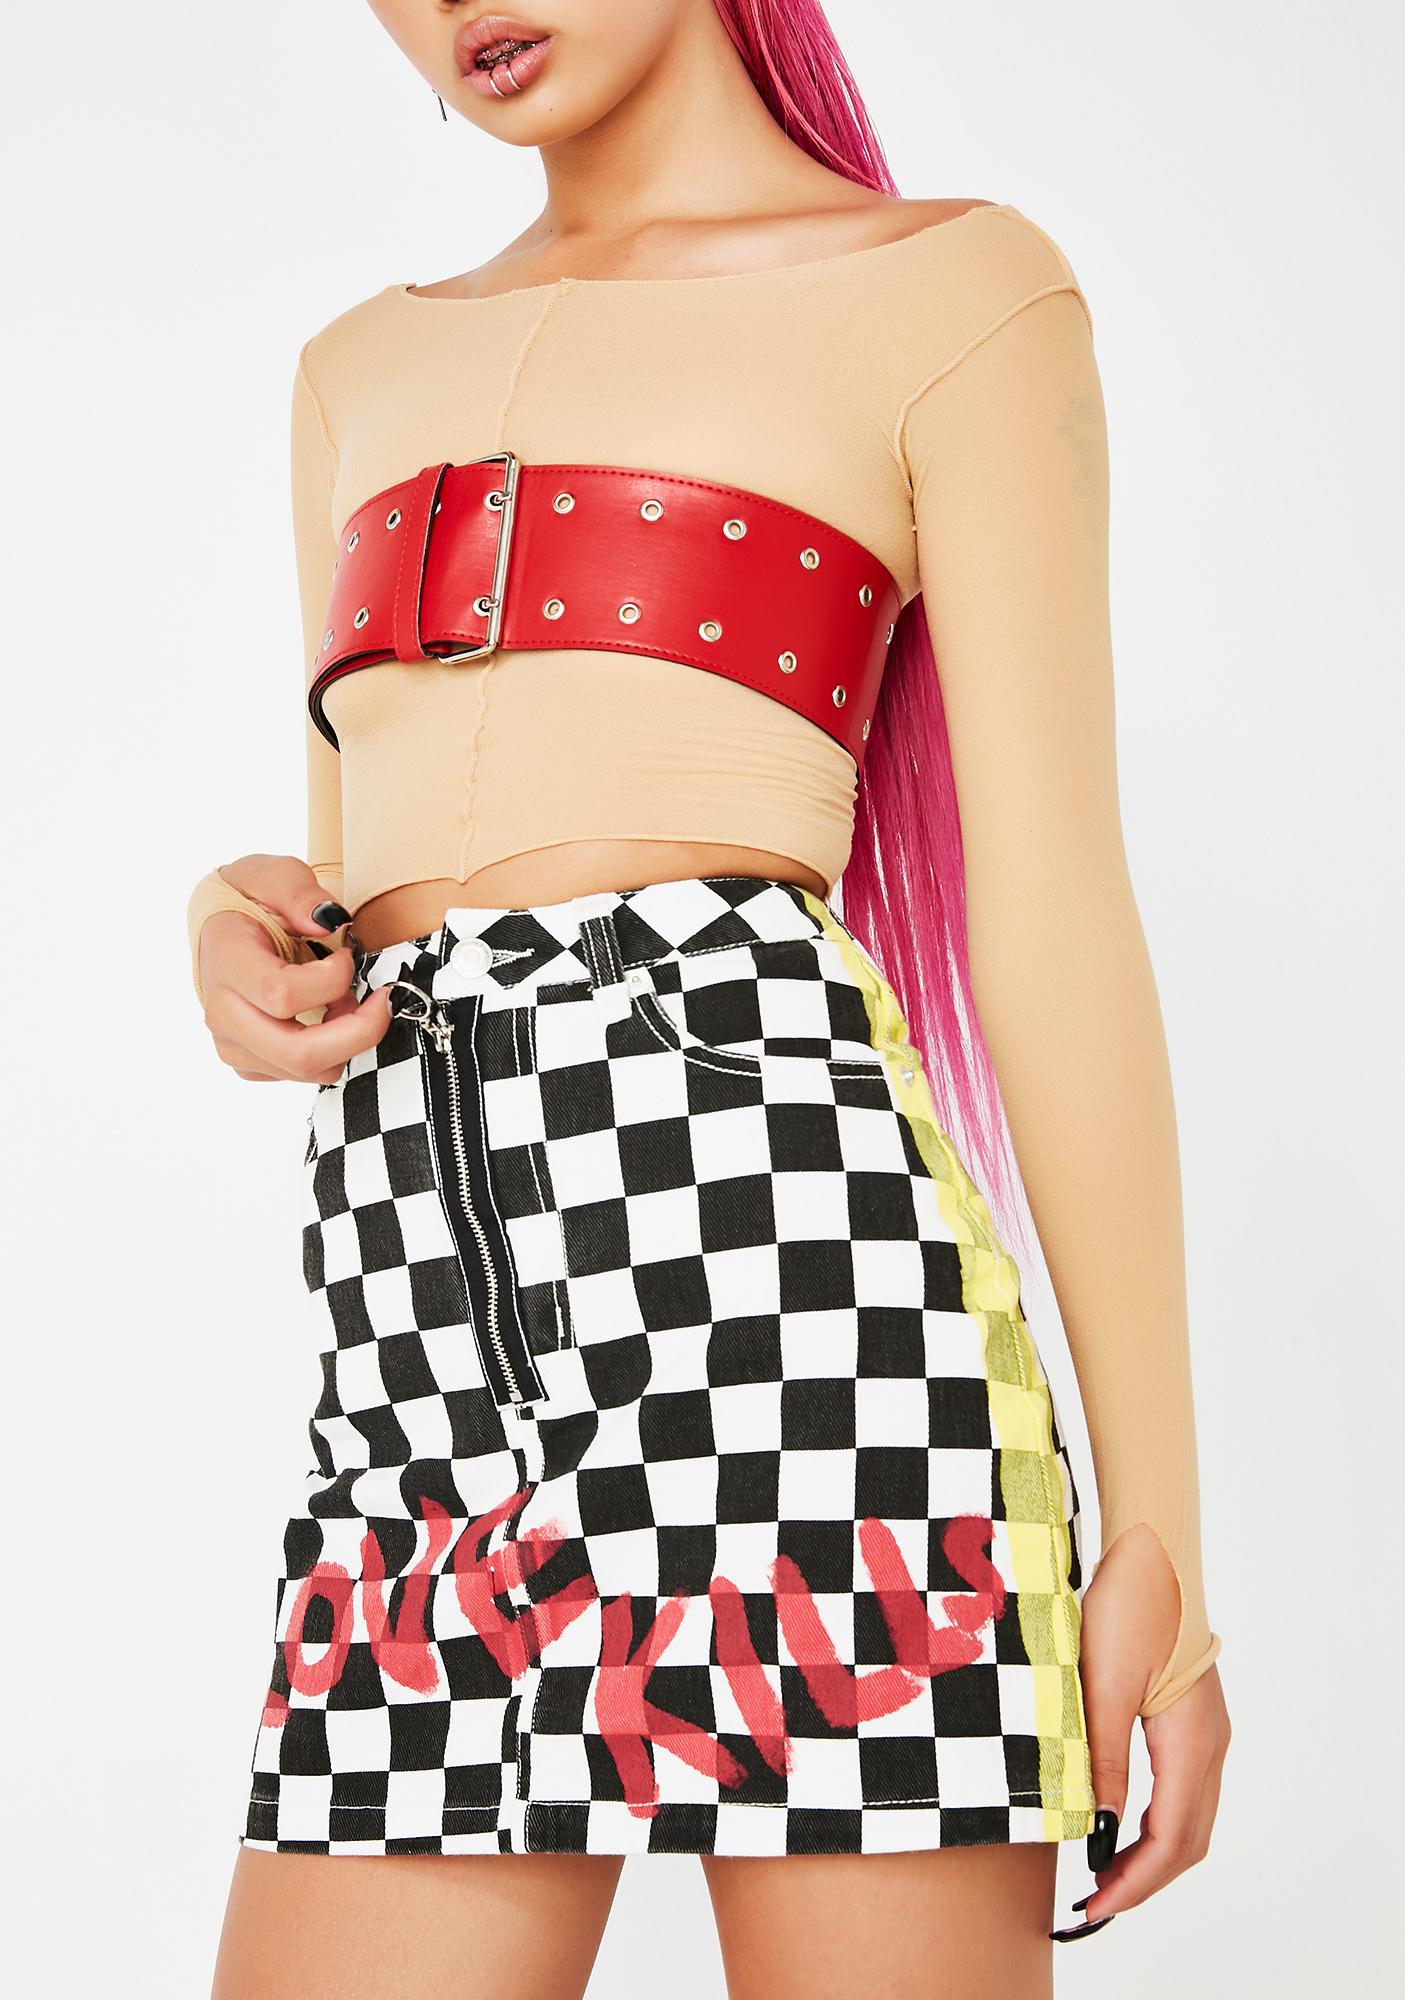 denim checkered skirt